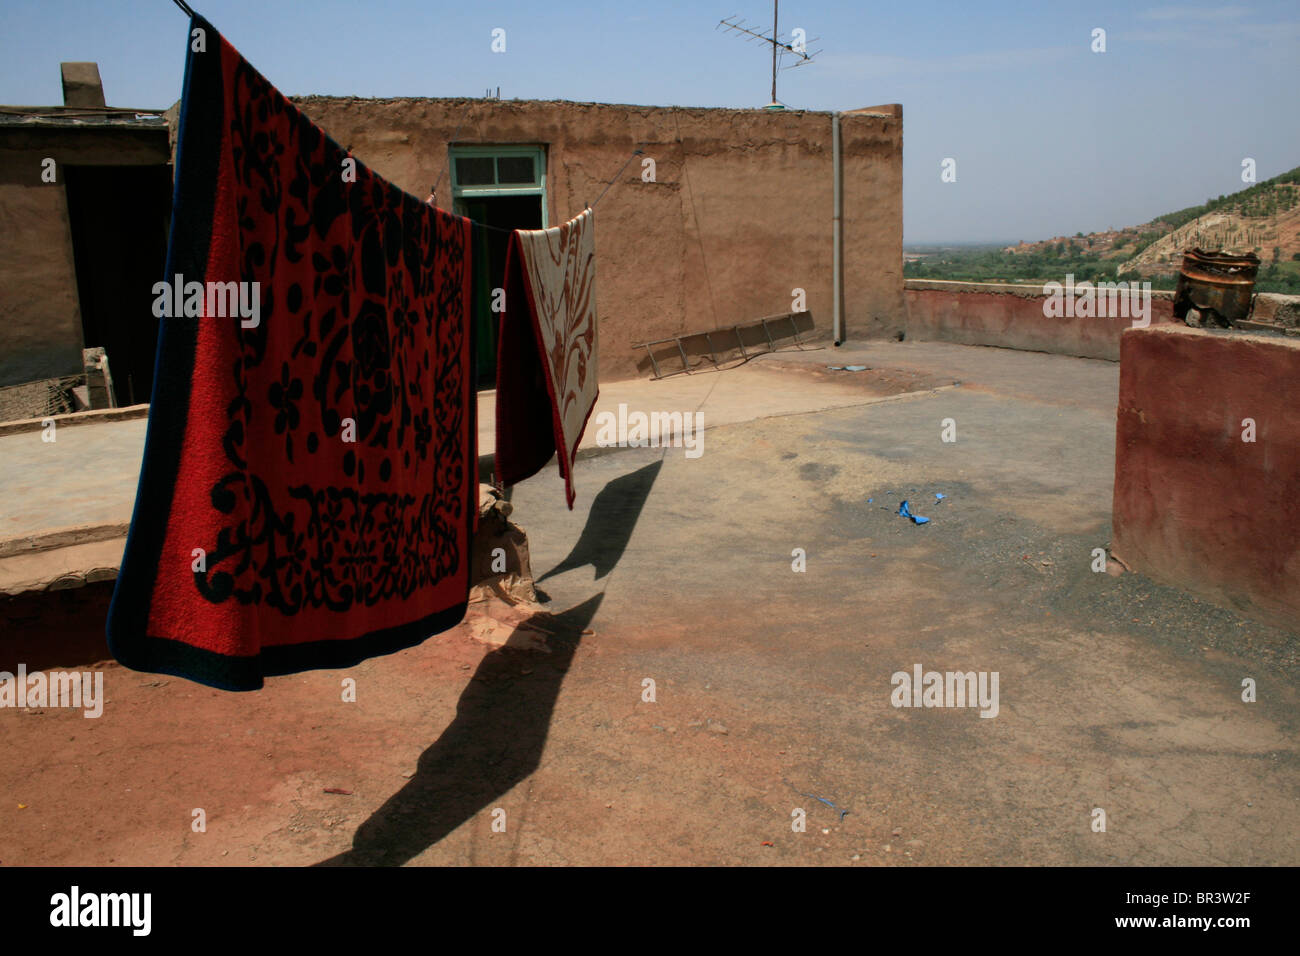 7 septembre 2009, les tapis sécher sur le toit d'une maison berbère près de Marrakech, Maroc. Photo par David Pillinger. Banque D'Images